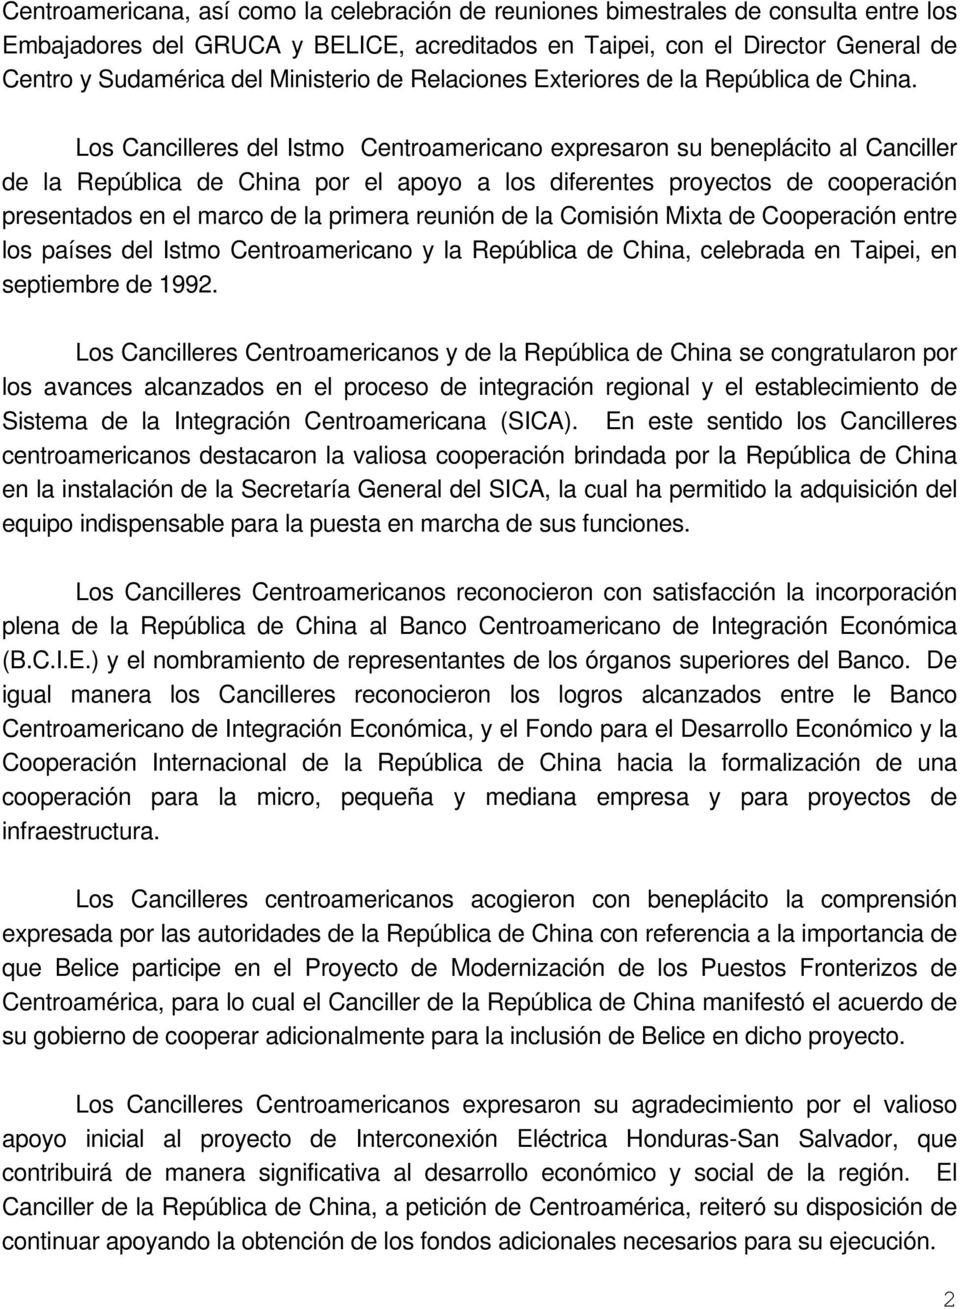 Los Cancilleres del Istmo Centroamericano expresaron su beneplácito al Canciller de la República de China por el apoyo a los diferentes proyectos de cooperación presentados en el marco de la primera